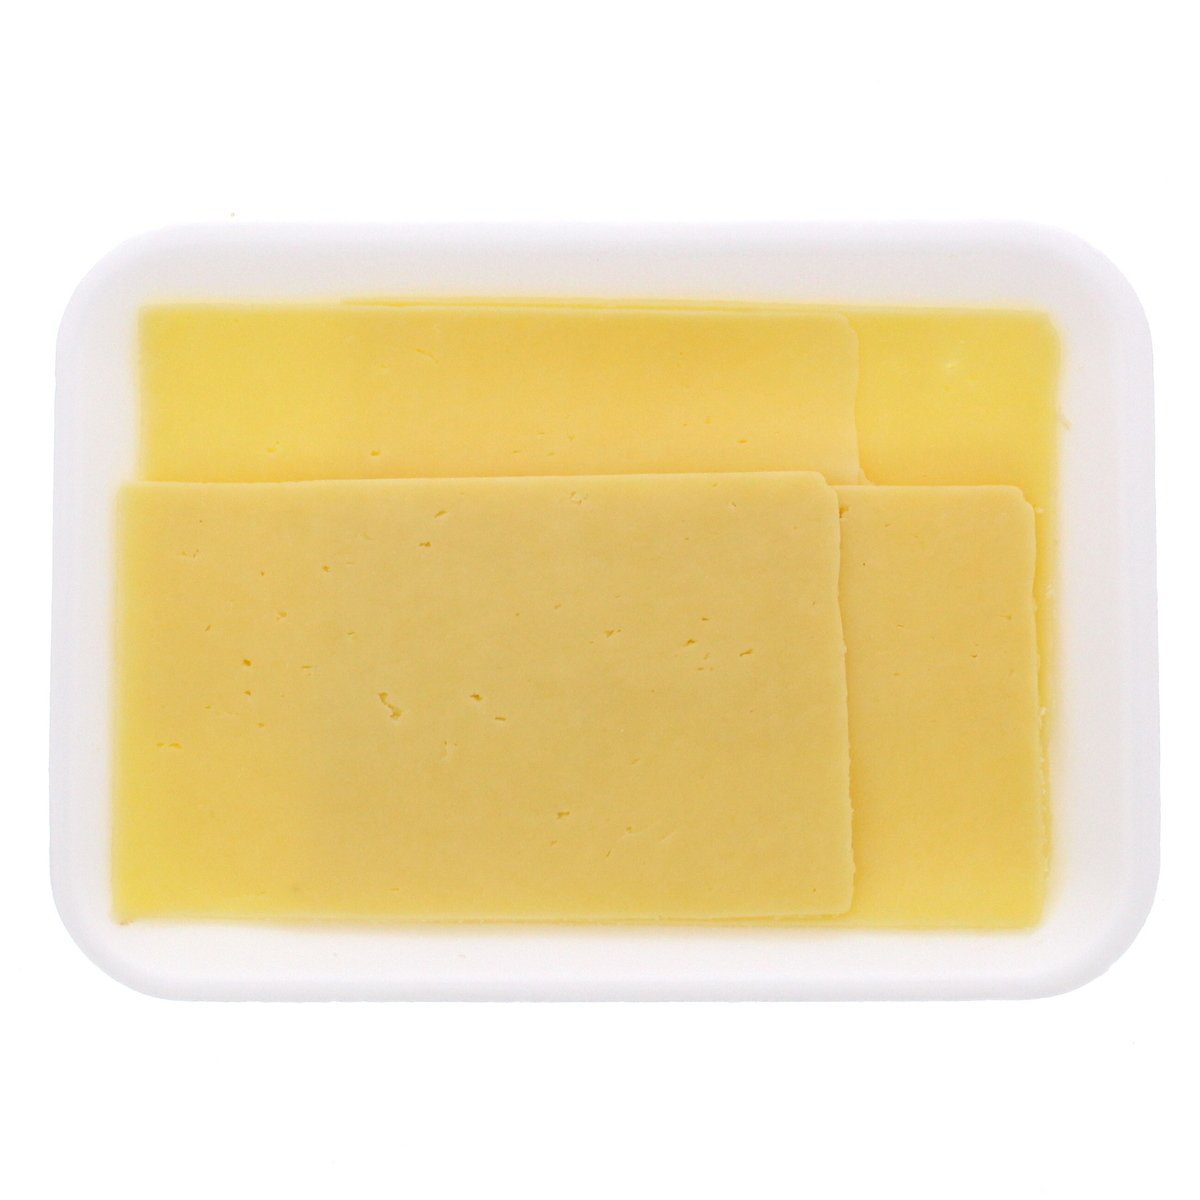 English Mild Cheddar Cheese 250 g